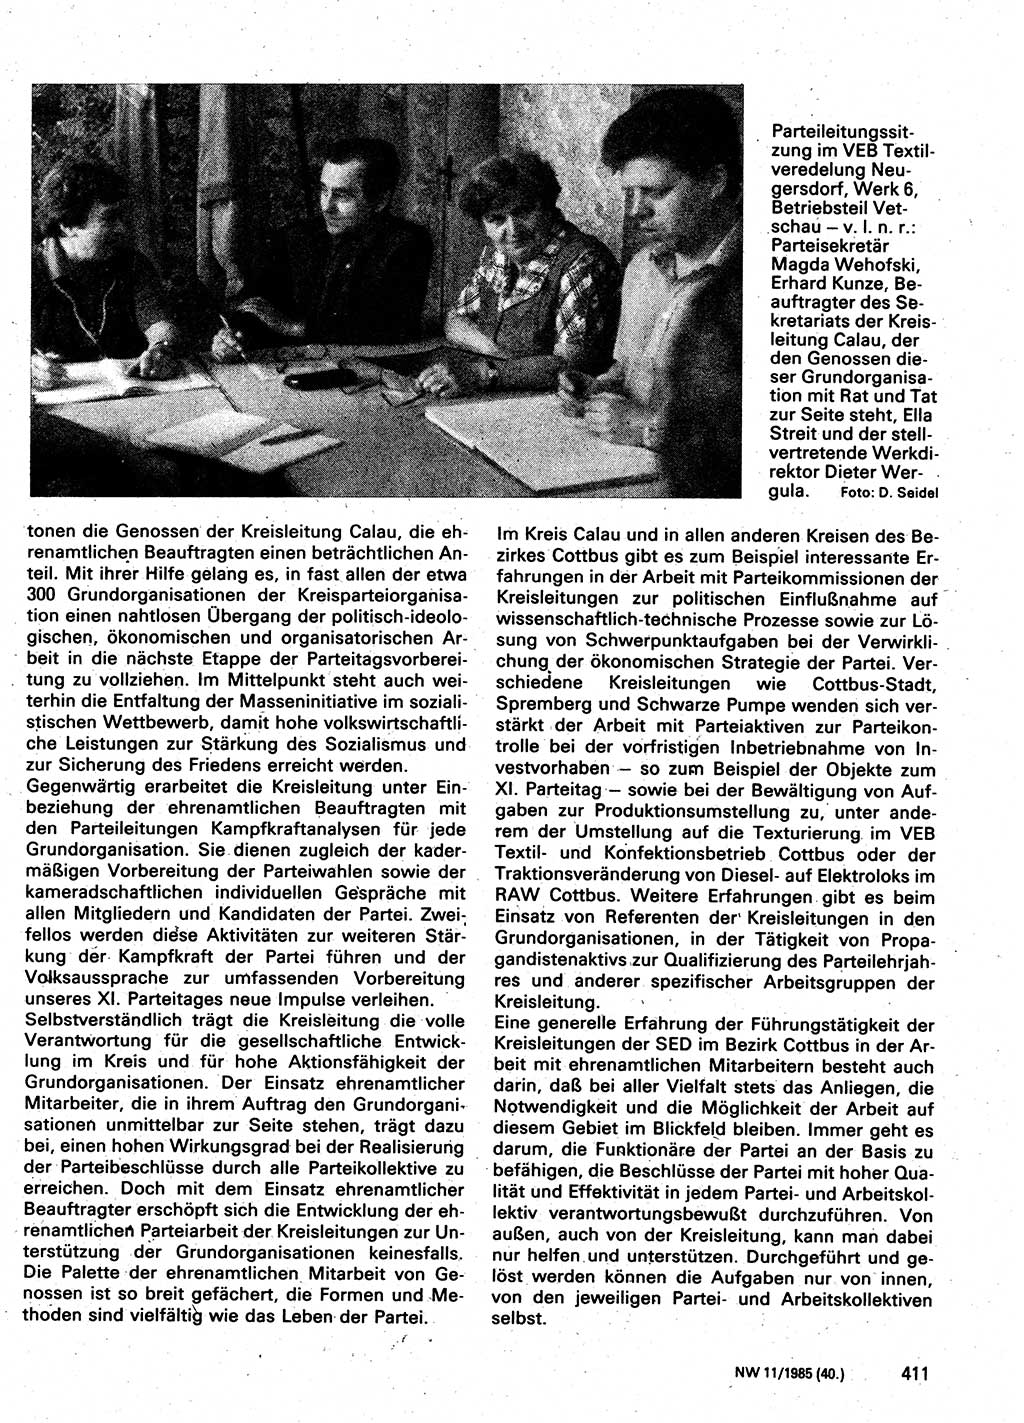 Neuer Weg (NW), Organ des Zentralkomitees (ZK) der SED (Sozialistische Einheitspartei Deutschlands) für Fragen des Parteilebens, 40. Jahrgang [Deutsche Demokratische Republik (DDR)] 1985, Seite 411 (NW ZK SED DDR 1985, S. 411)